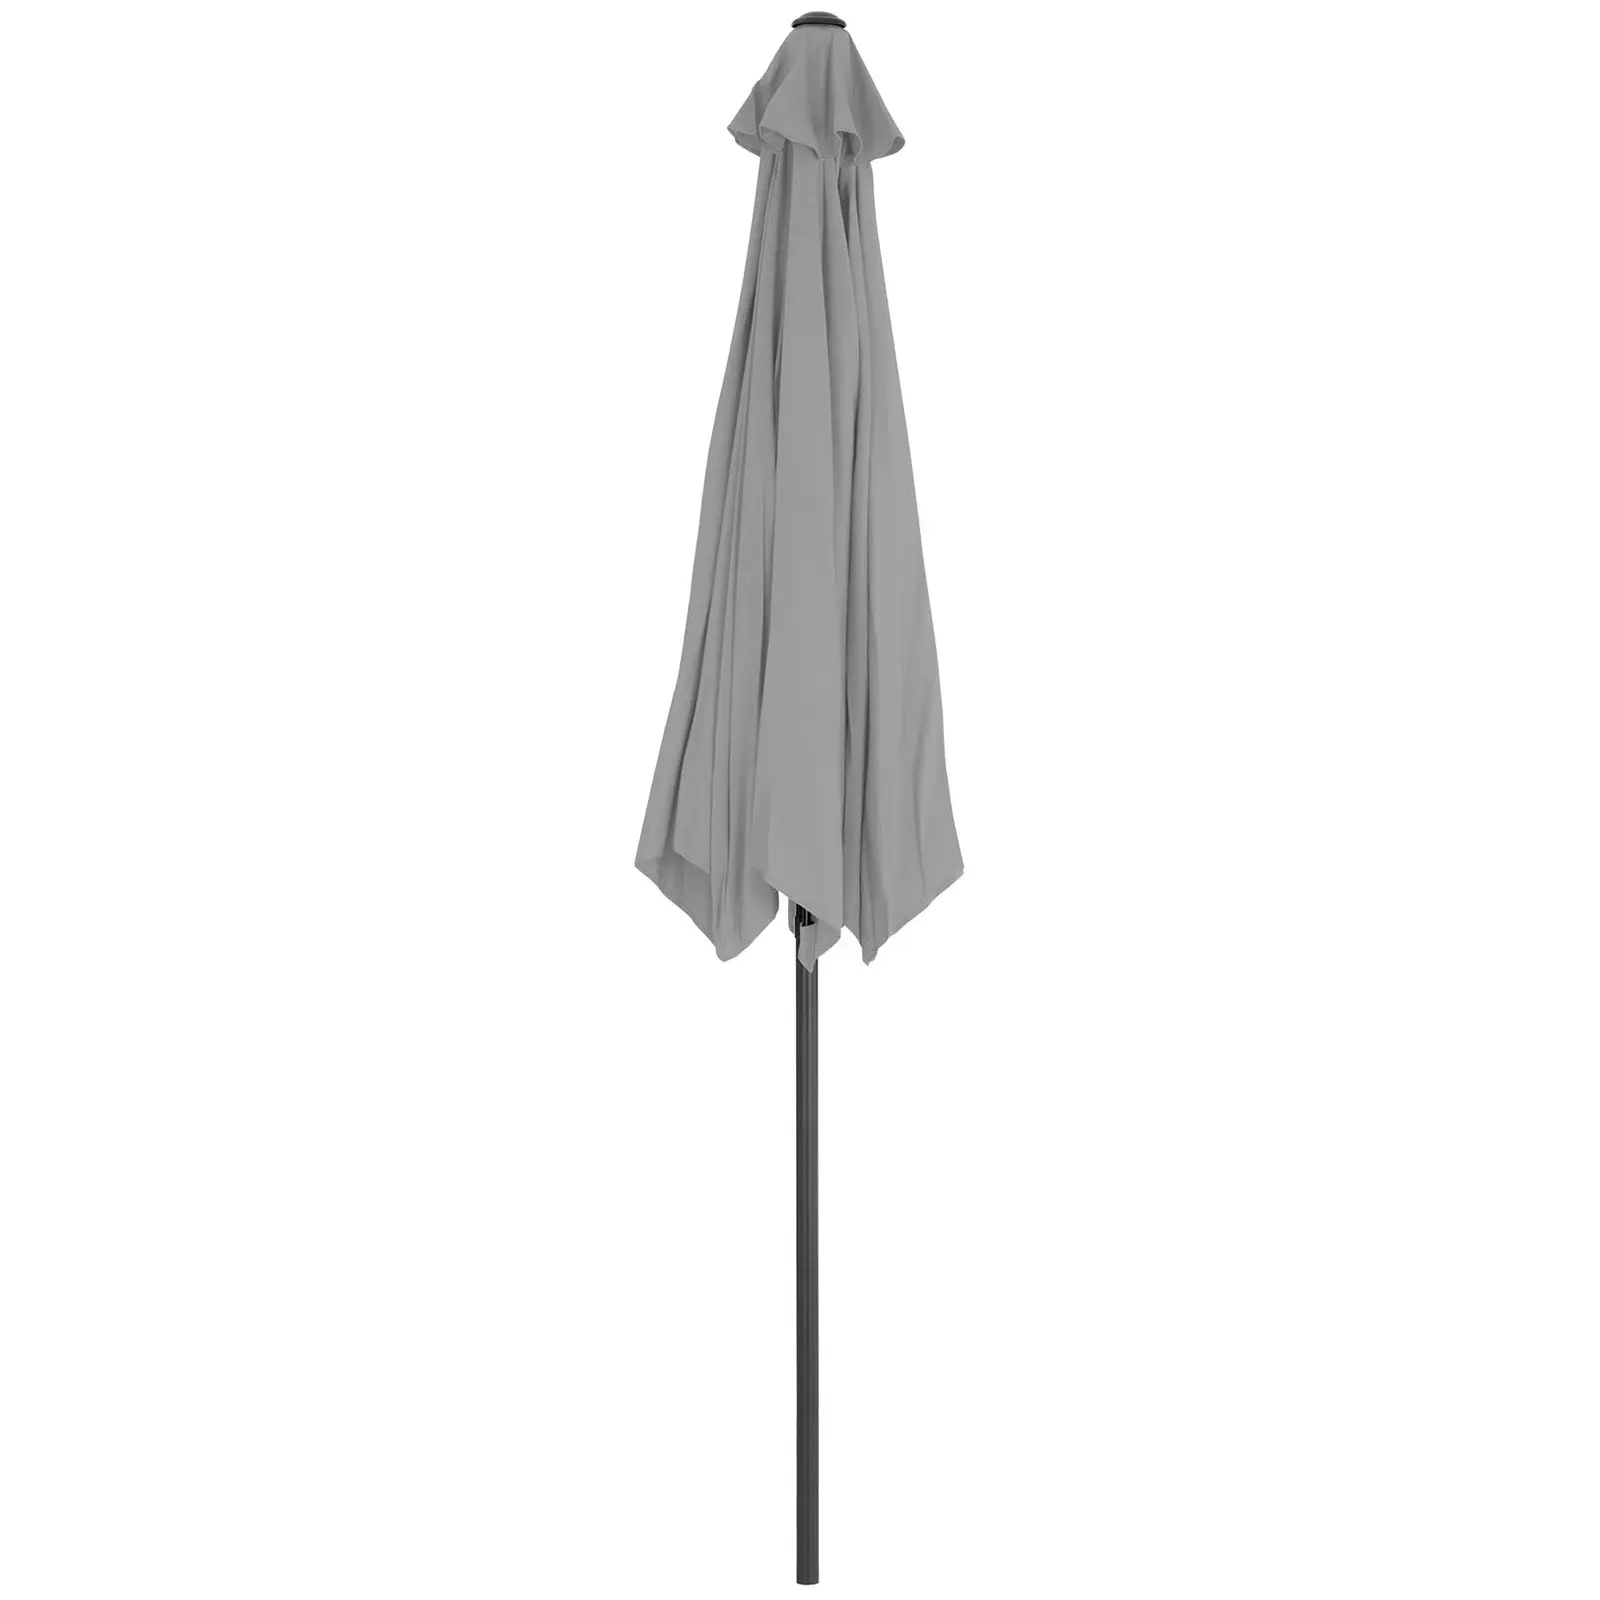 Velký slunečník - tmavě šedý - šestihranný - Ø 270 cm - naklápěcí